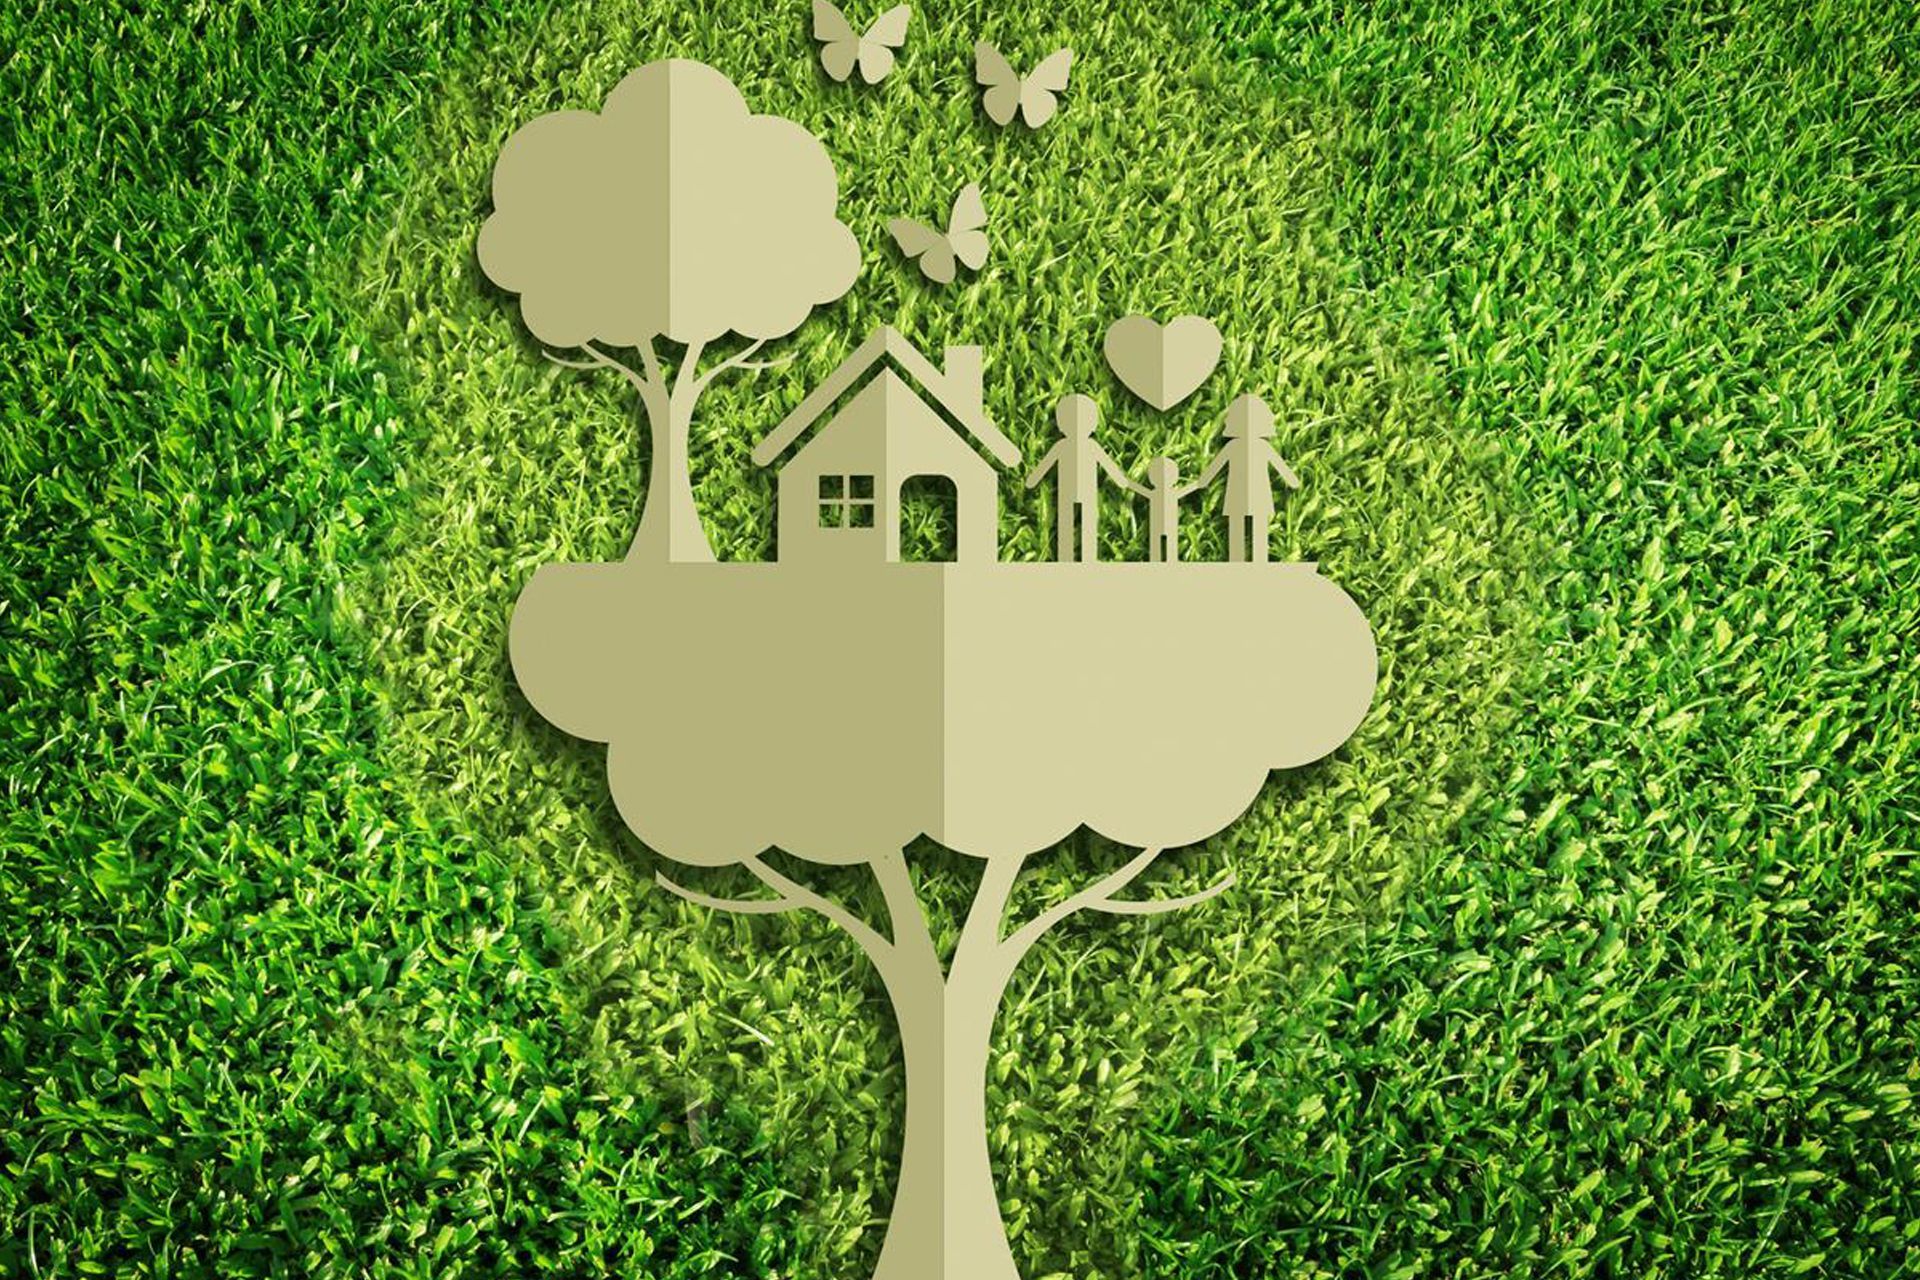 La transition écologique peut se poursuivre par petits pas et avec la collaboration de tous pour progresser vers une économie "verte" et sortir de l'ancienne société de consommation et d'exploitation